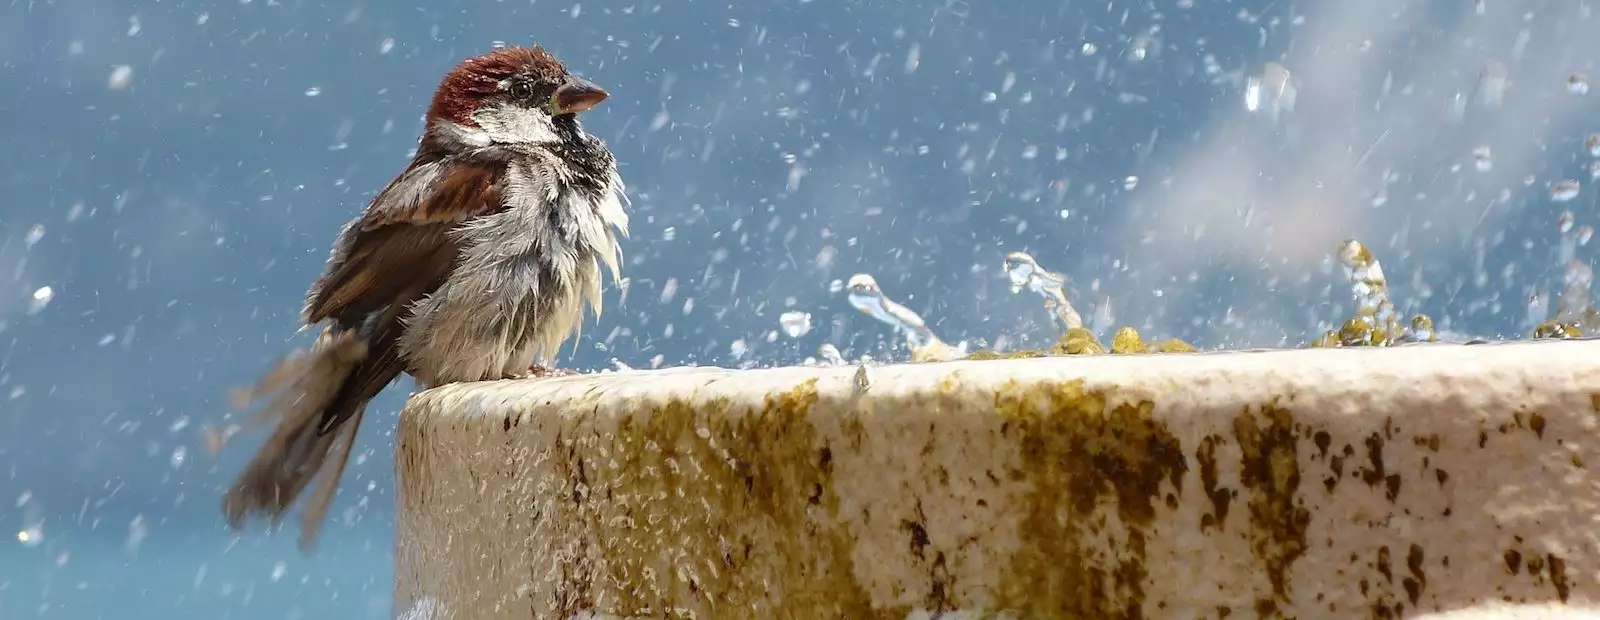 Belgrade sparrow